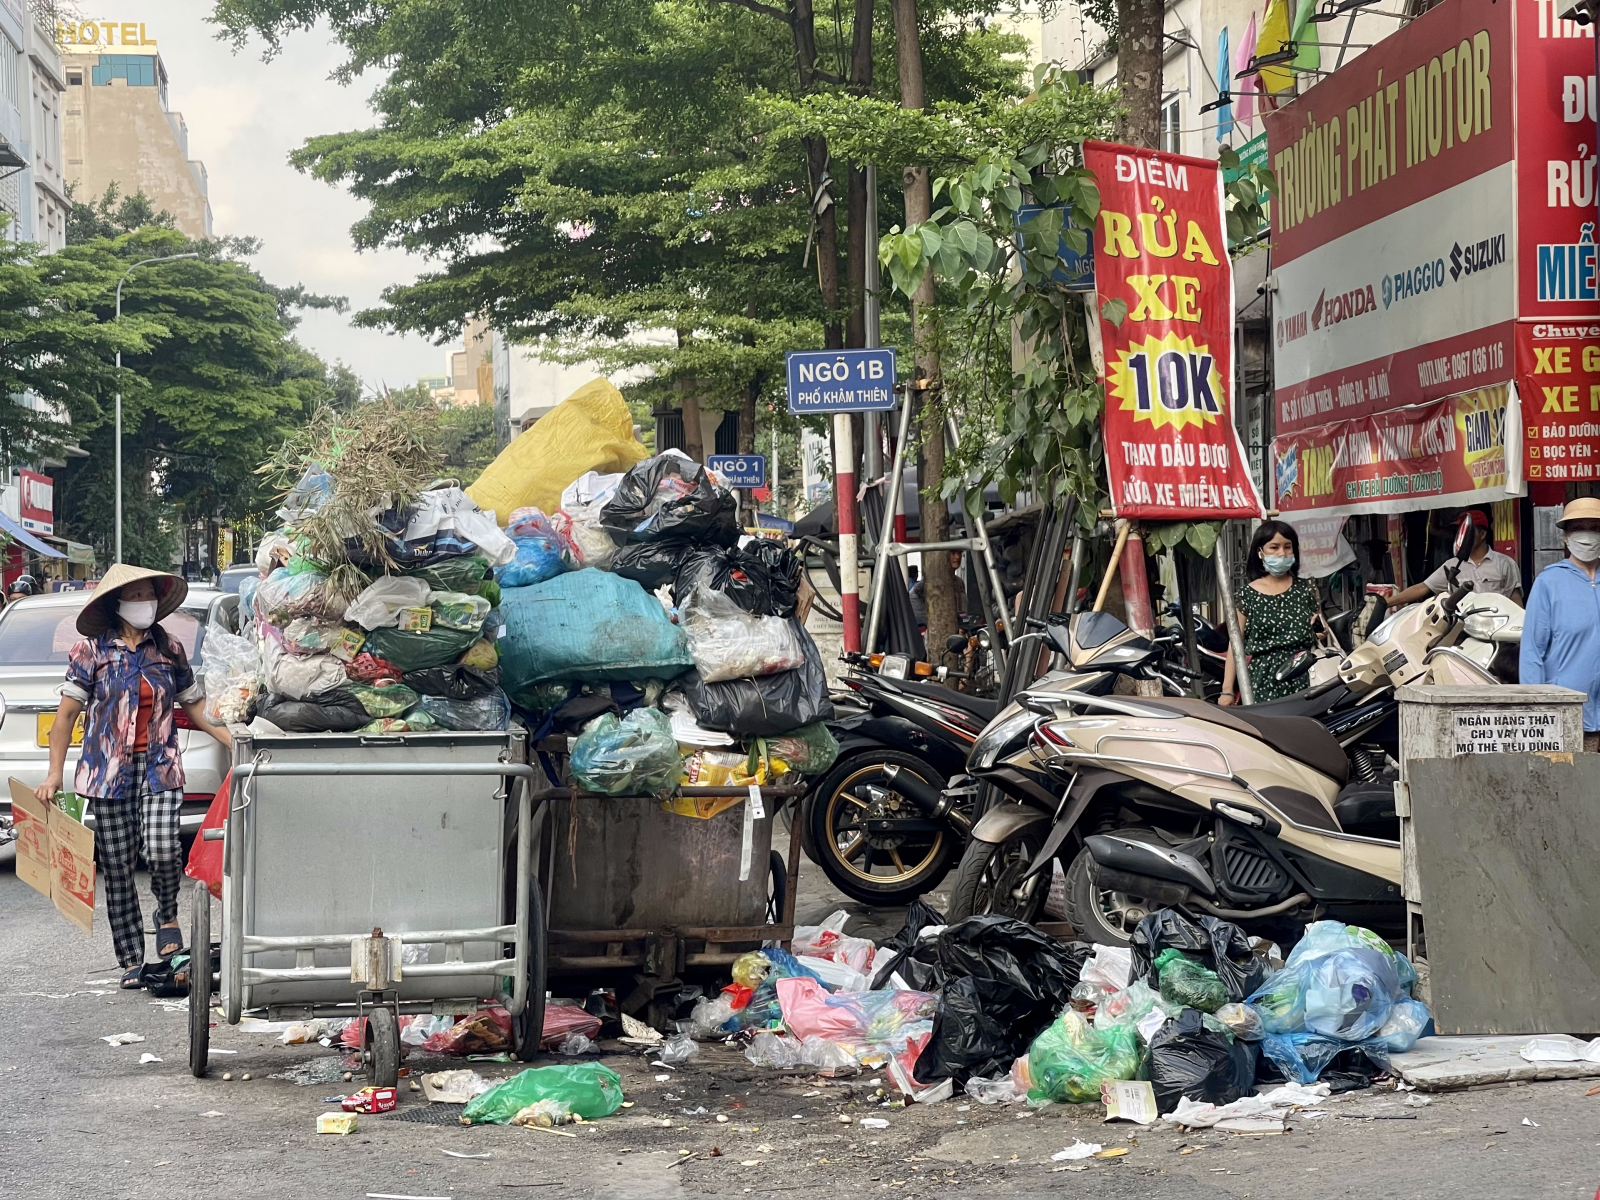 Con phố Khâm Thiên “tắc cứng” vì lưu lượng xe cộ lớn, nhưng diện tích lòng đường còn khiêm tốn, vậy mà vẫn có hàng loạt xe rác lấn chiếm đến 1/4 lòng đường.